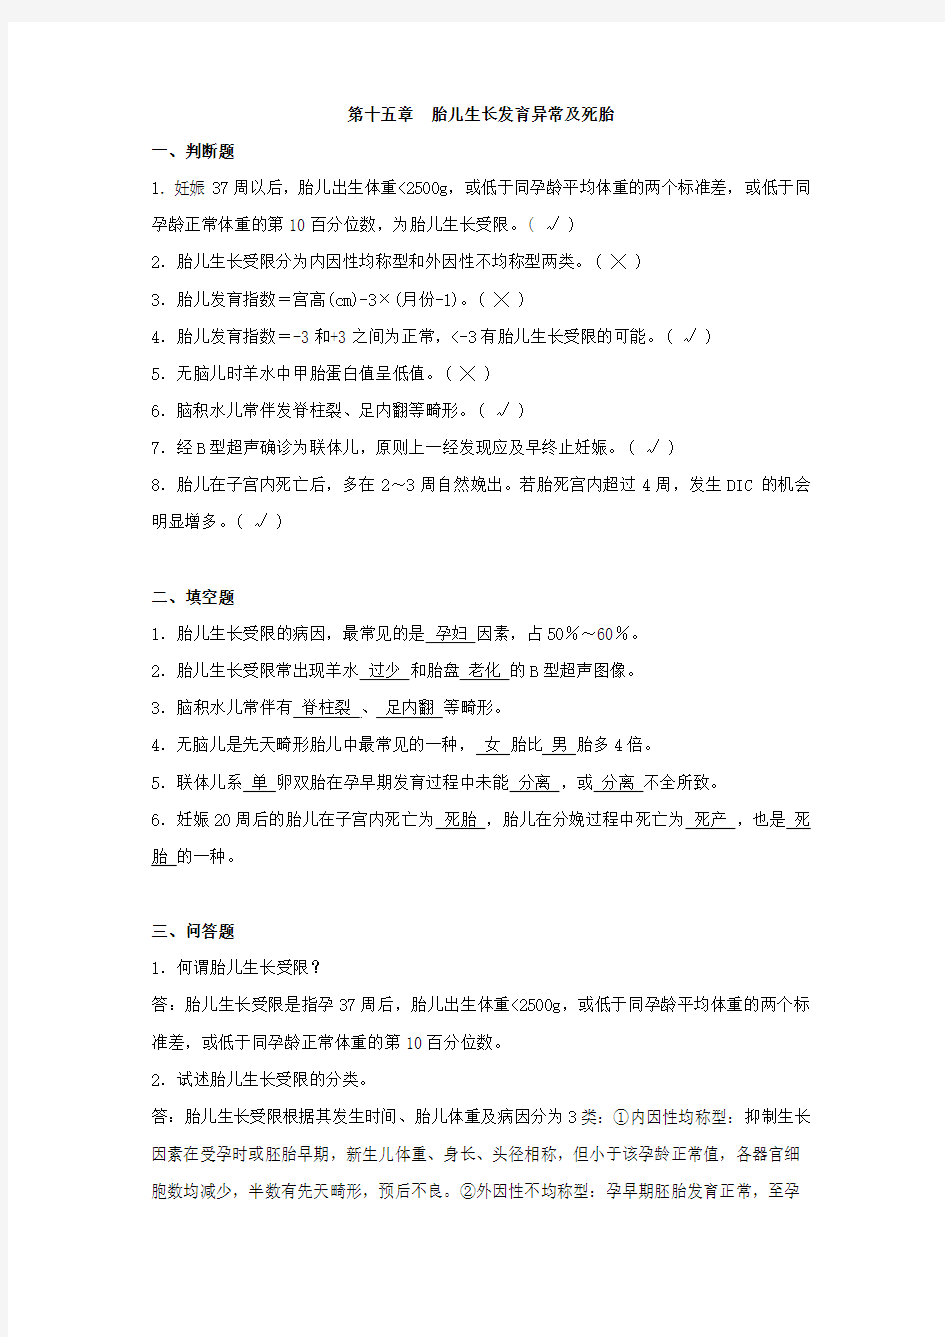 上海交通大学医学院(上海交大)练习题第十五章 胎儿生长发育异常及死胎